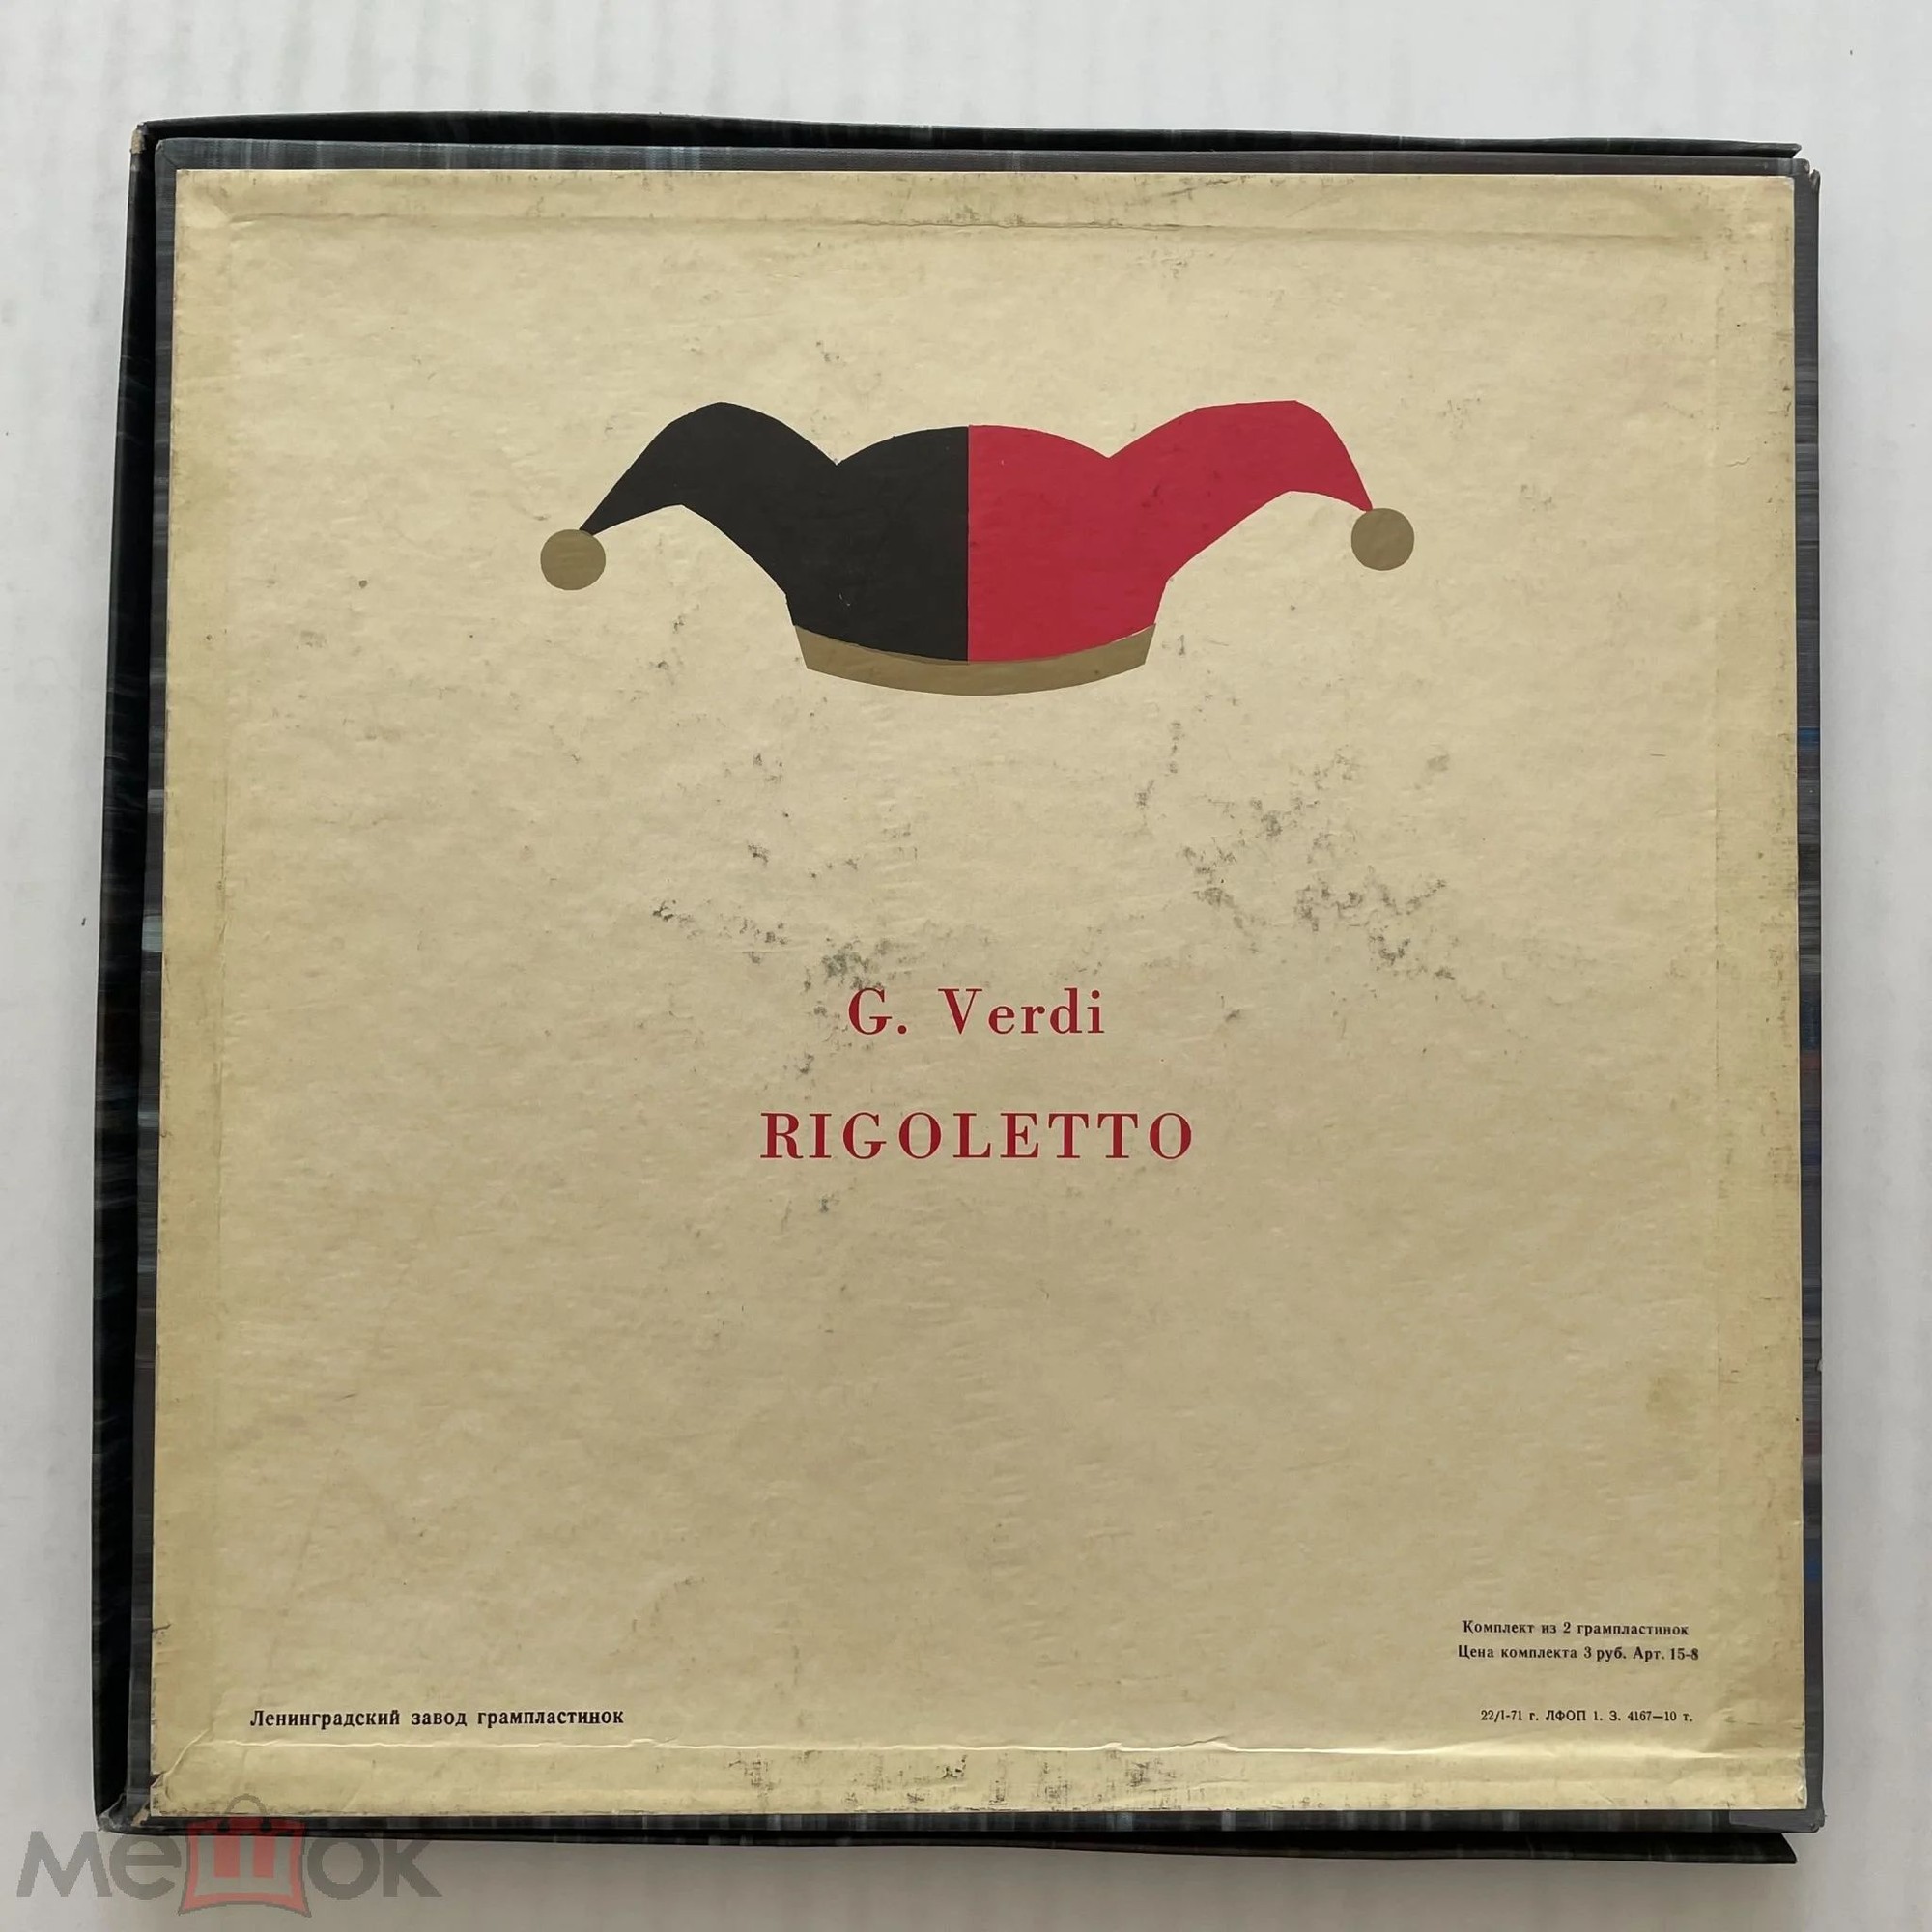 Дж. Верди: «Риголетто», опера в трех действиях